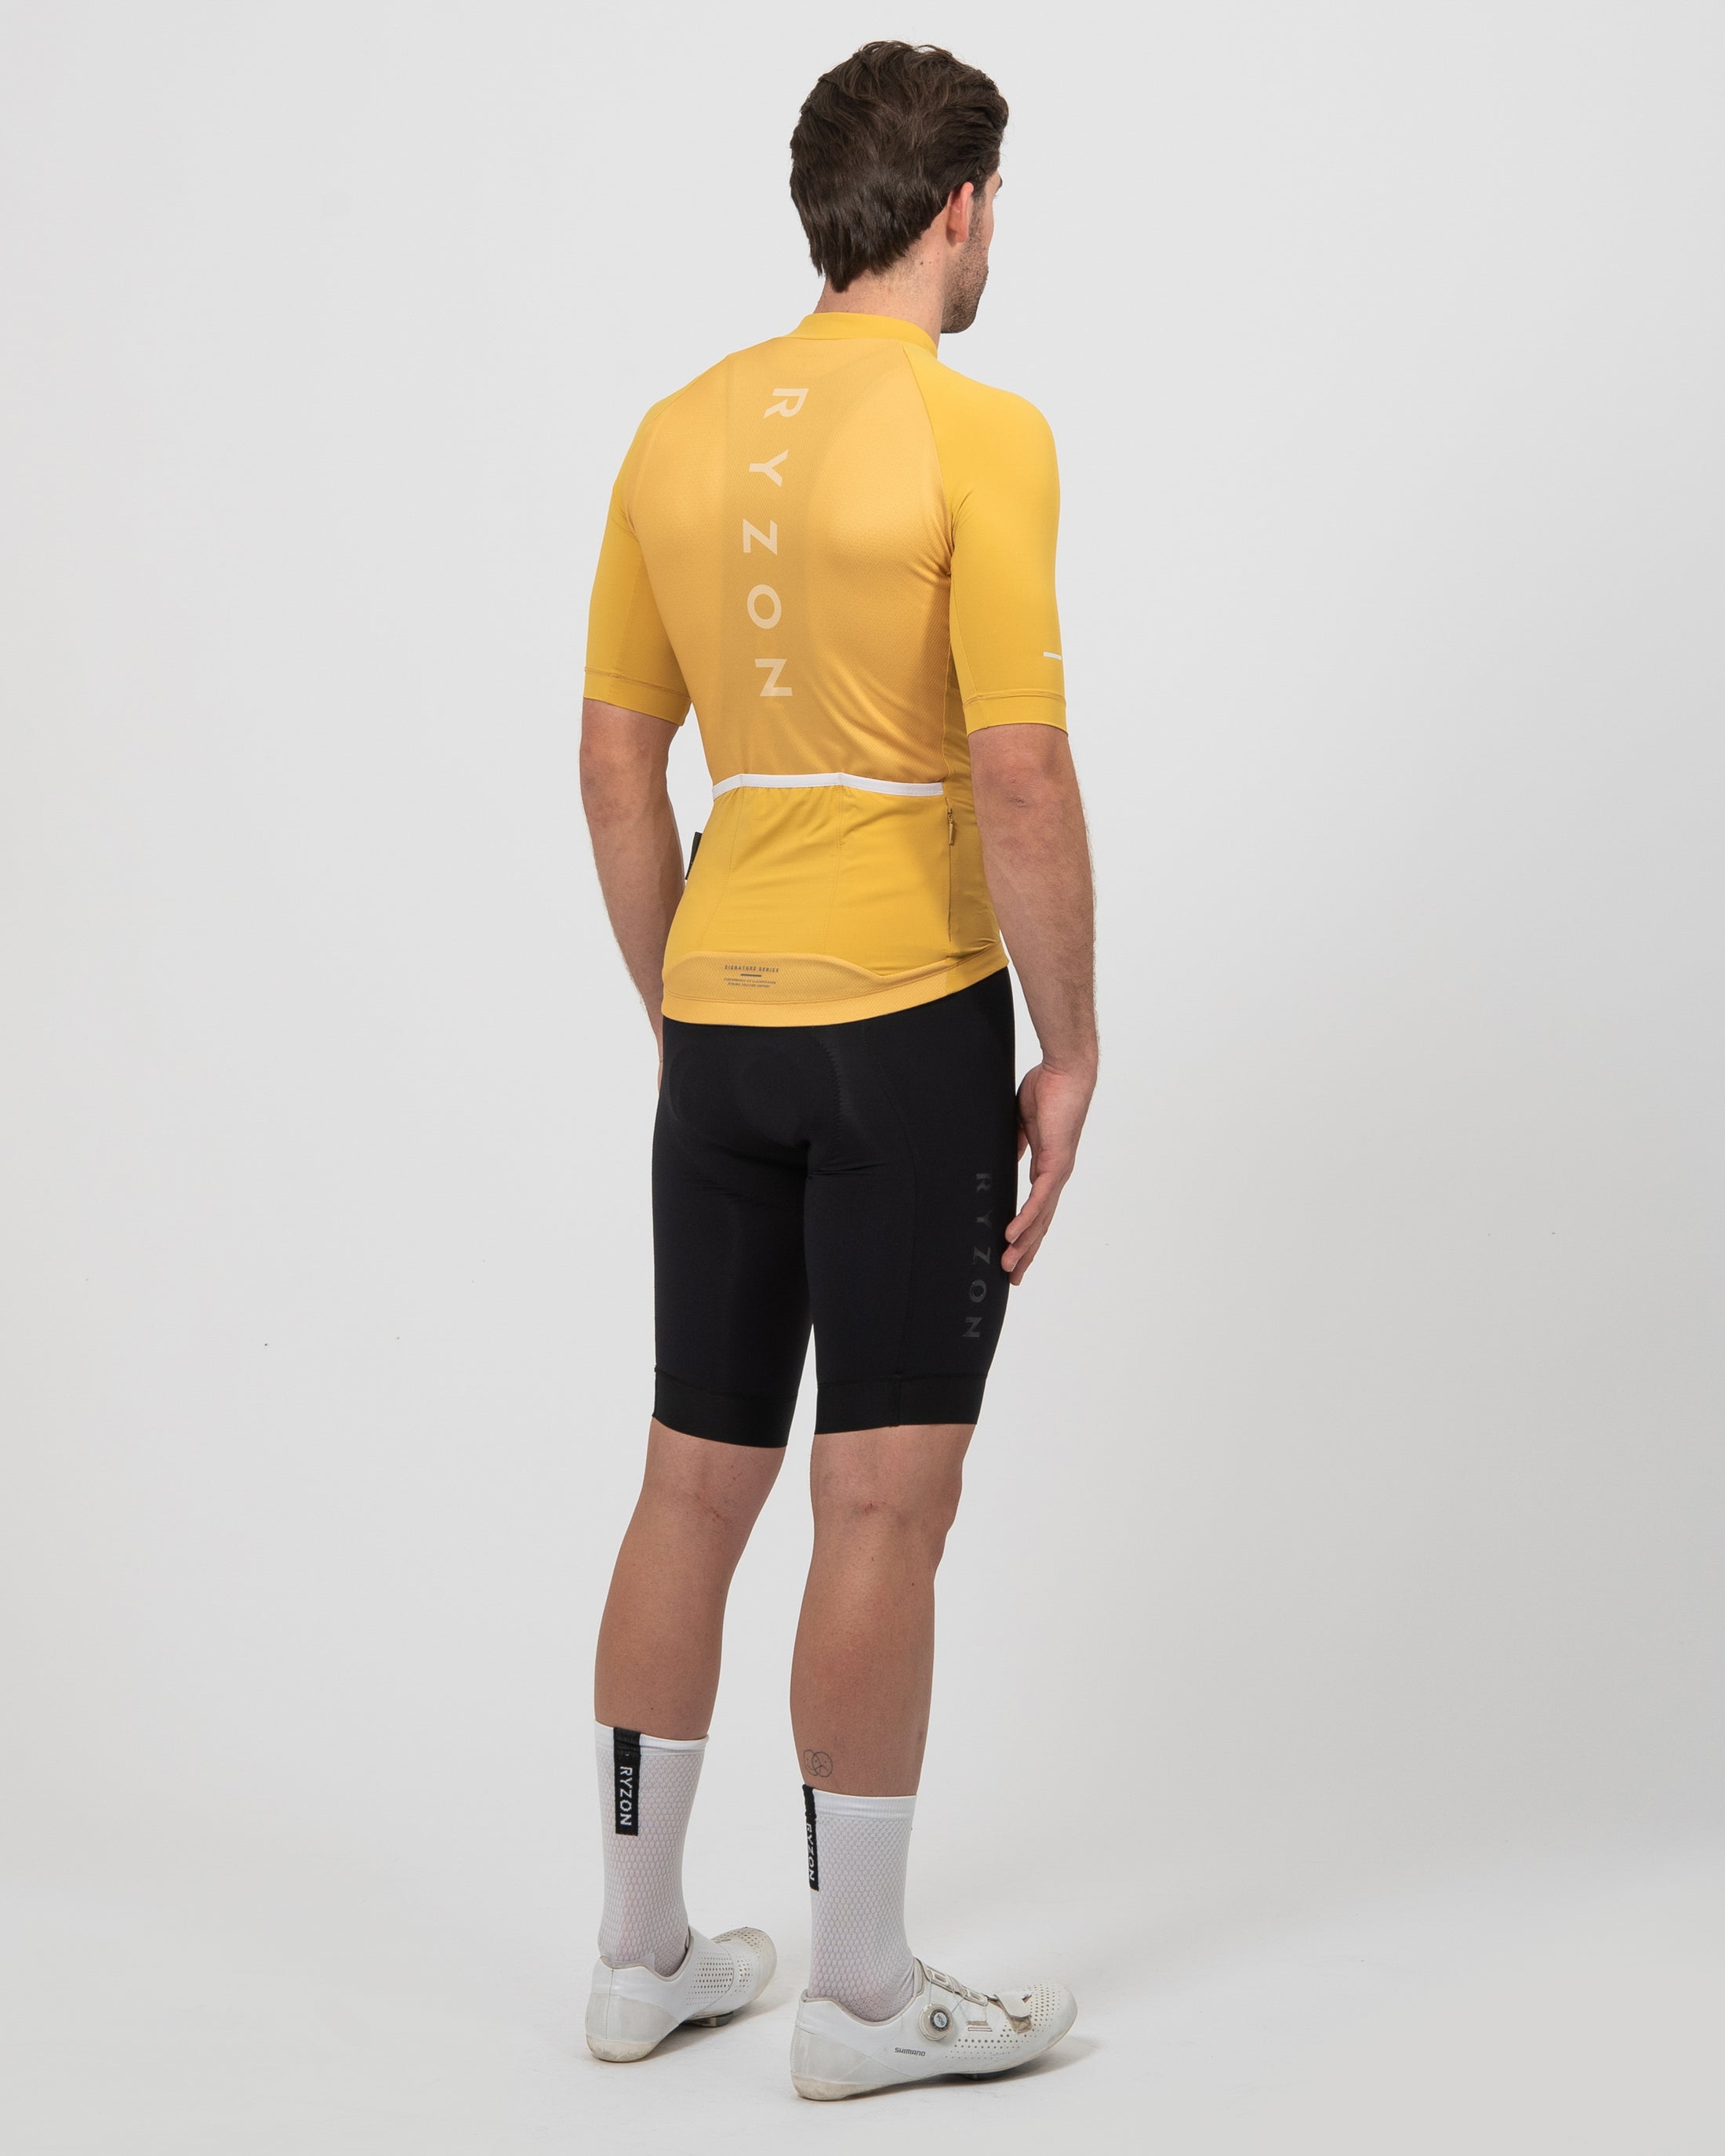 Signature Bike Jersey | Cycling jersey & bike jersey from RYZON